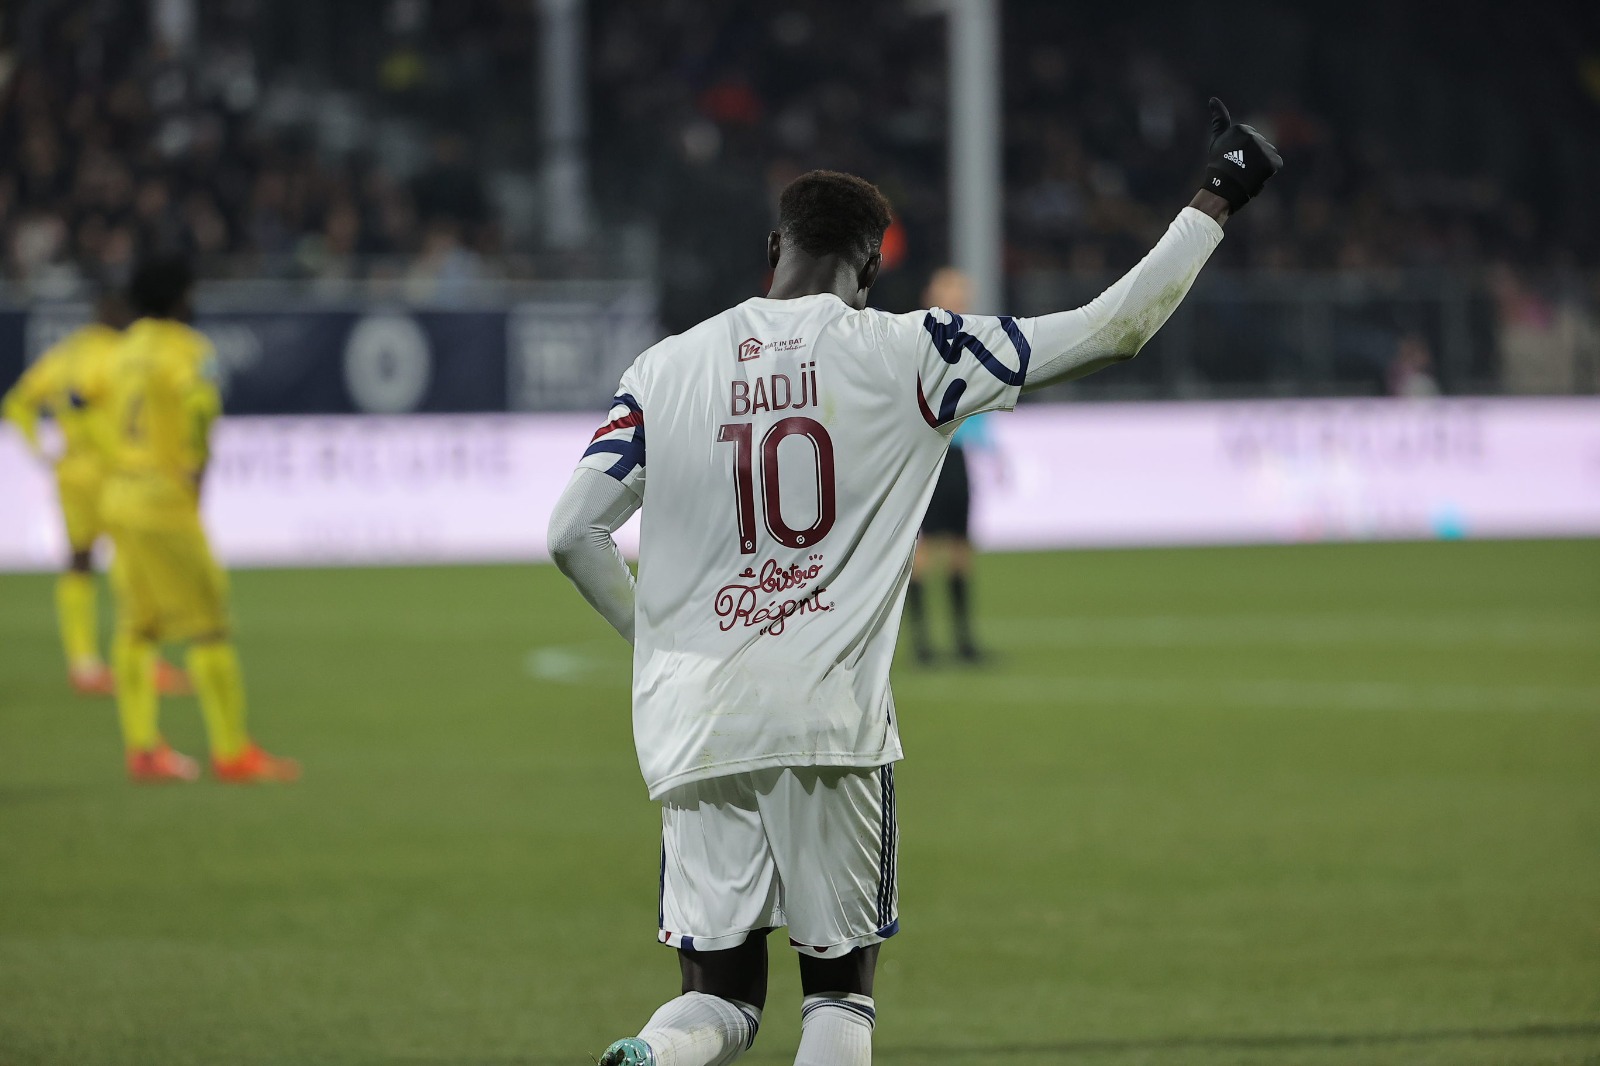 Aliou Badji marque son premier but de la saison avec les Girondins de Bordeaux.